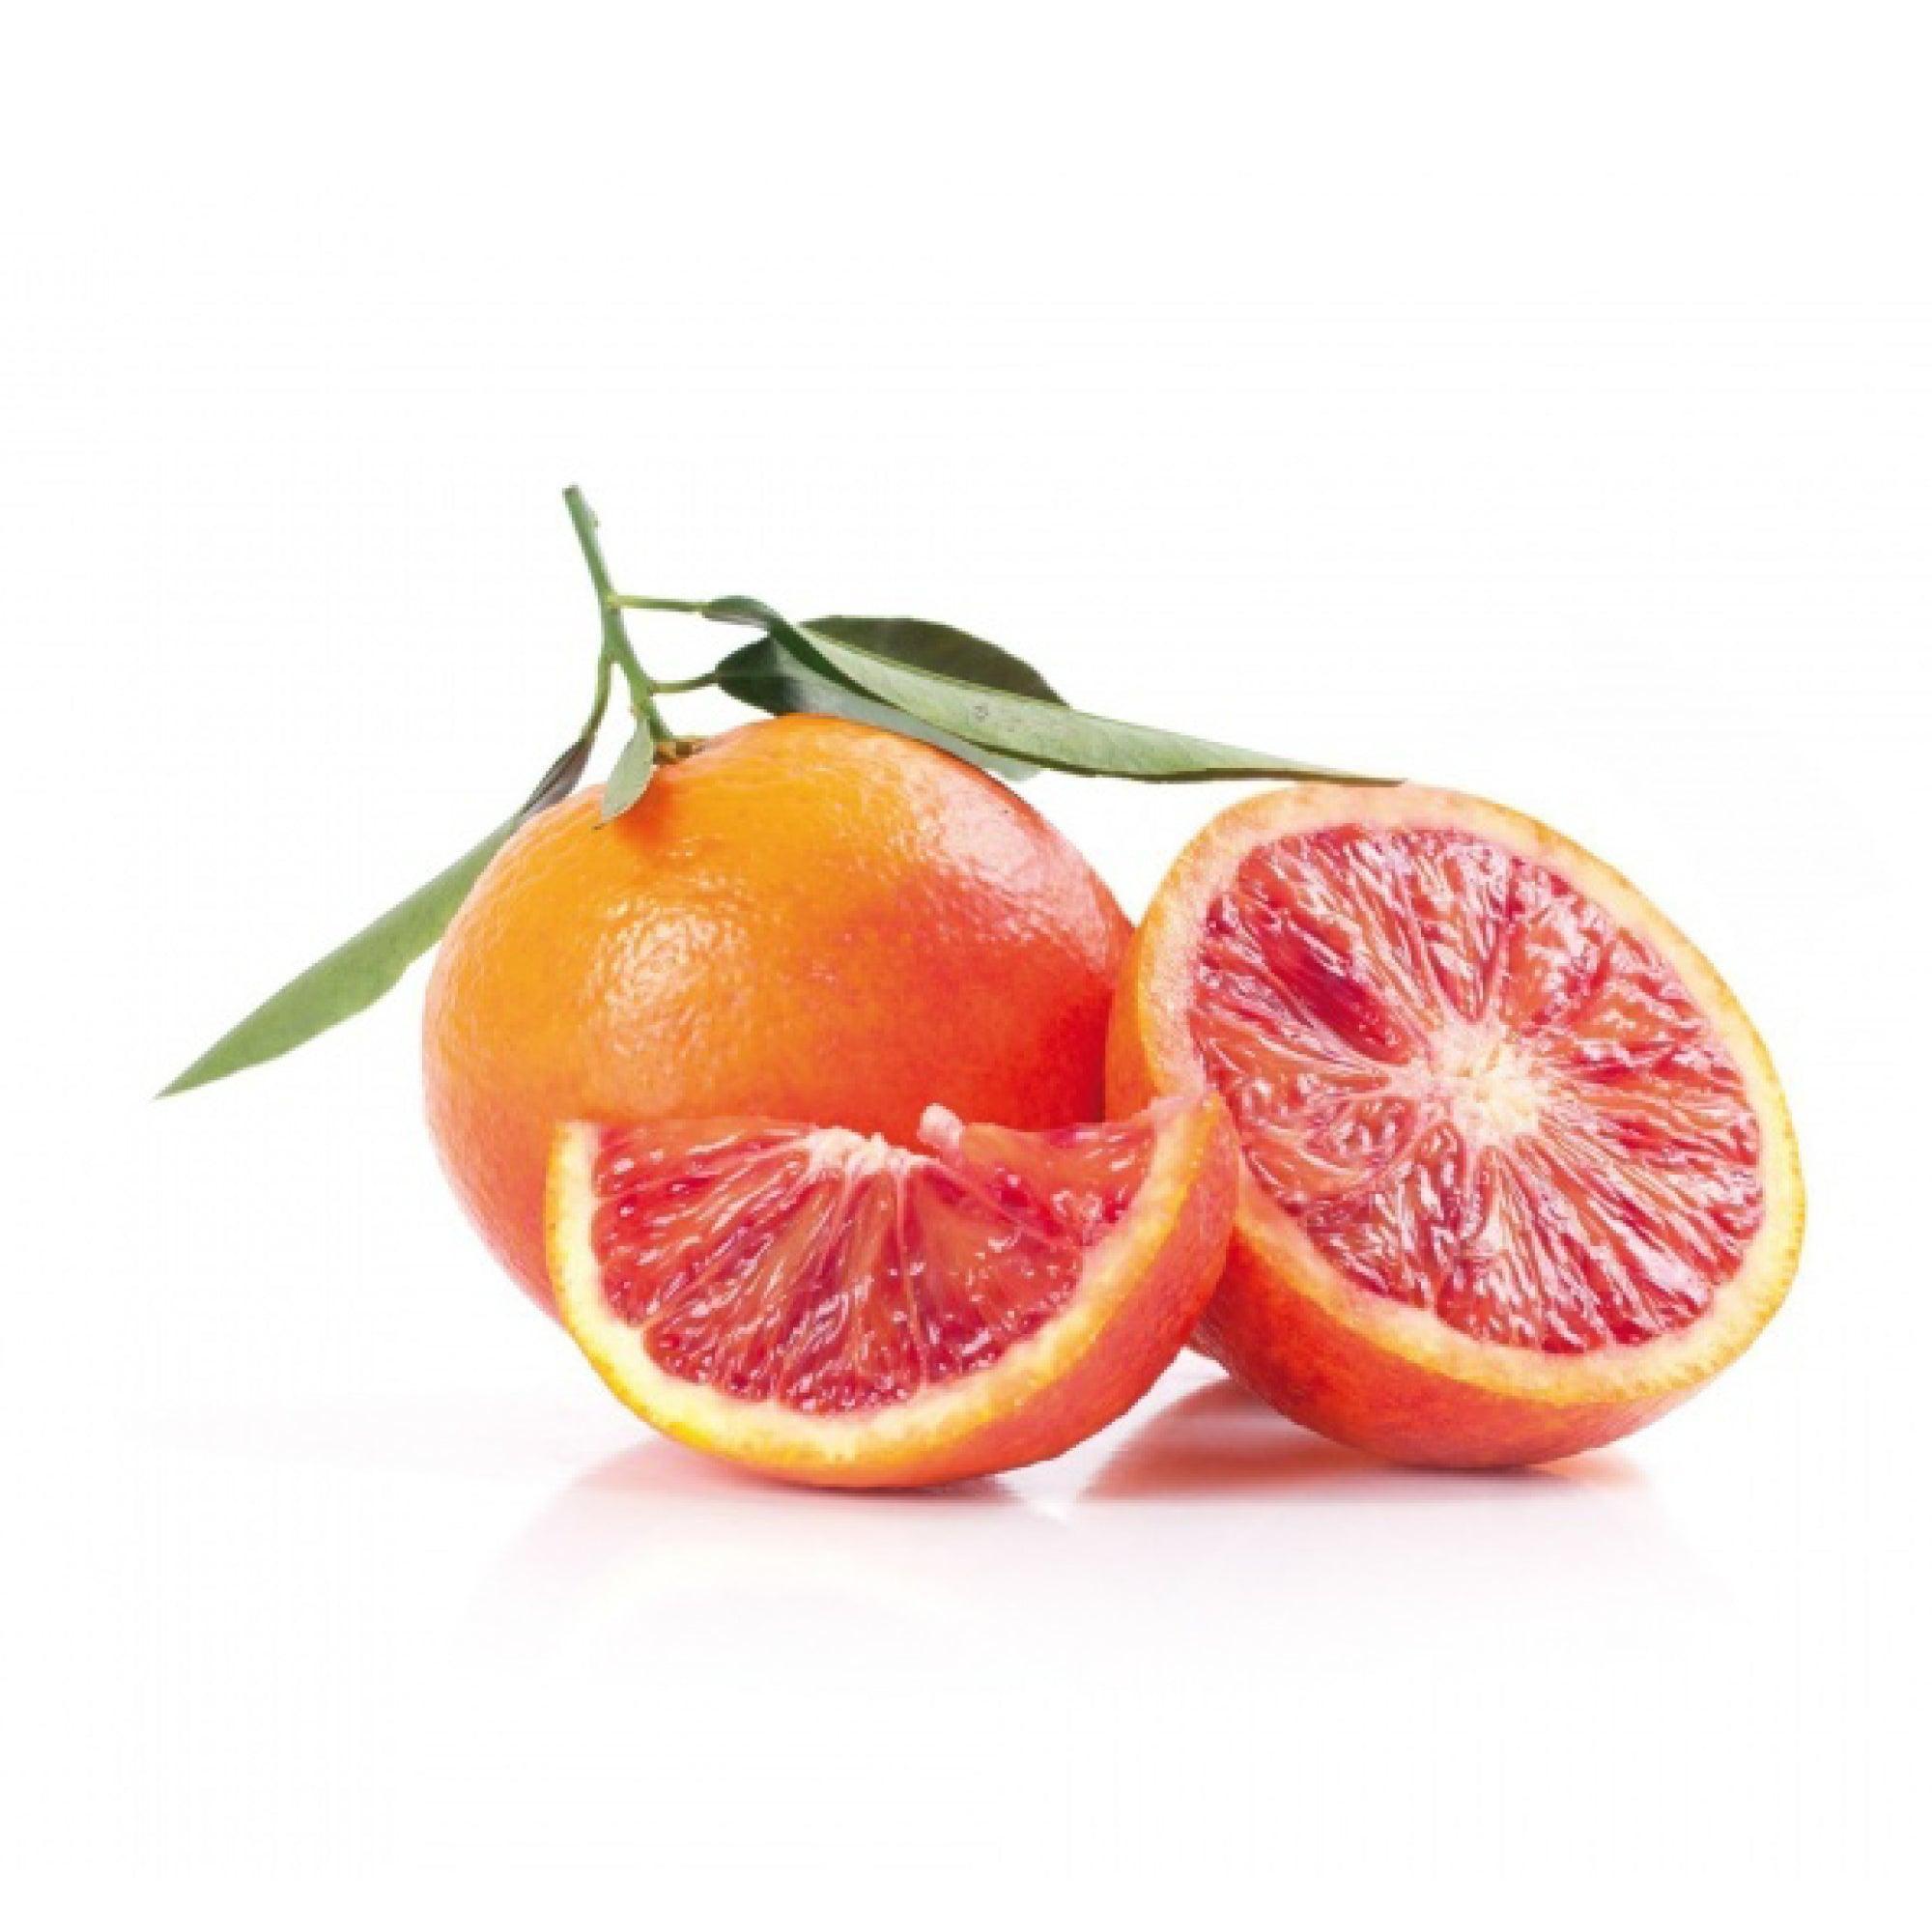 Blood Orange Purée - Savory Gourmet